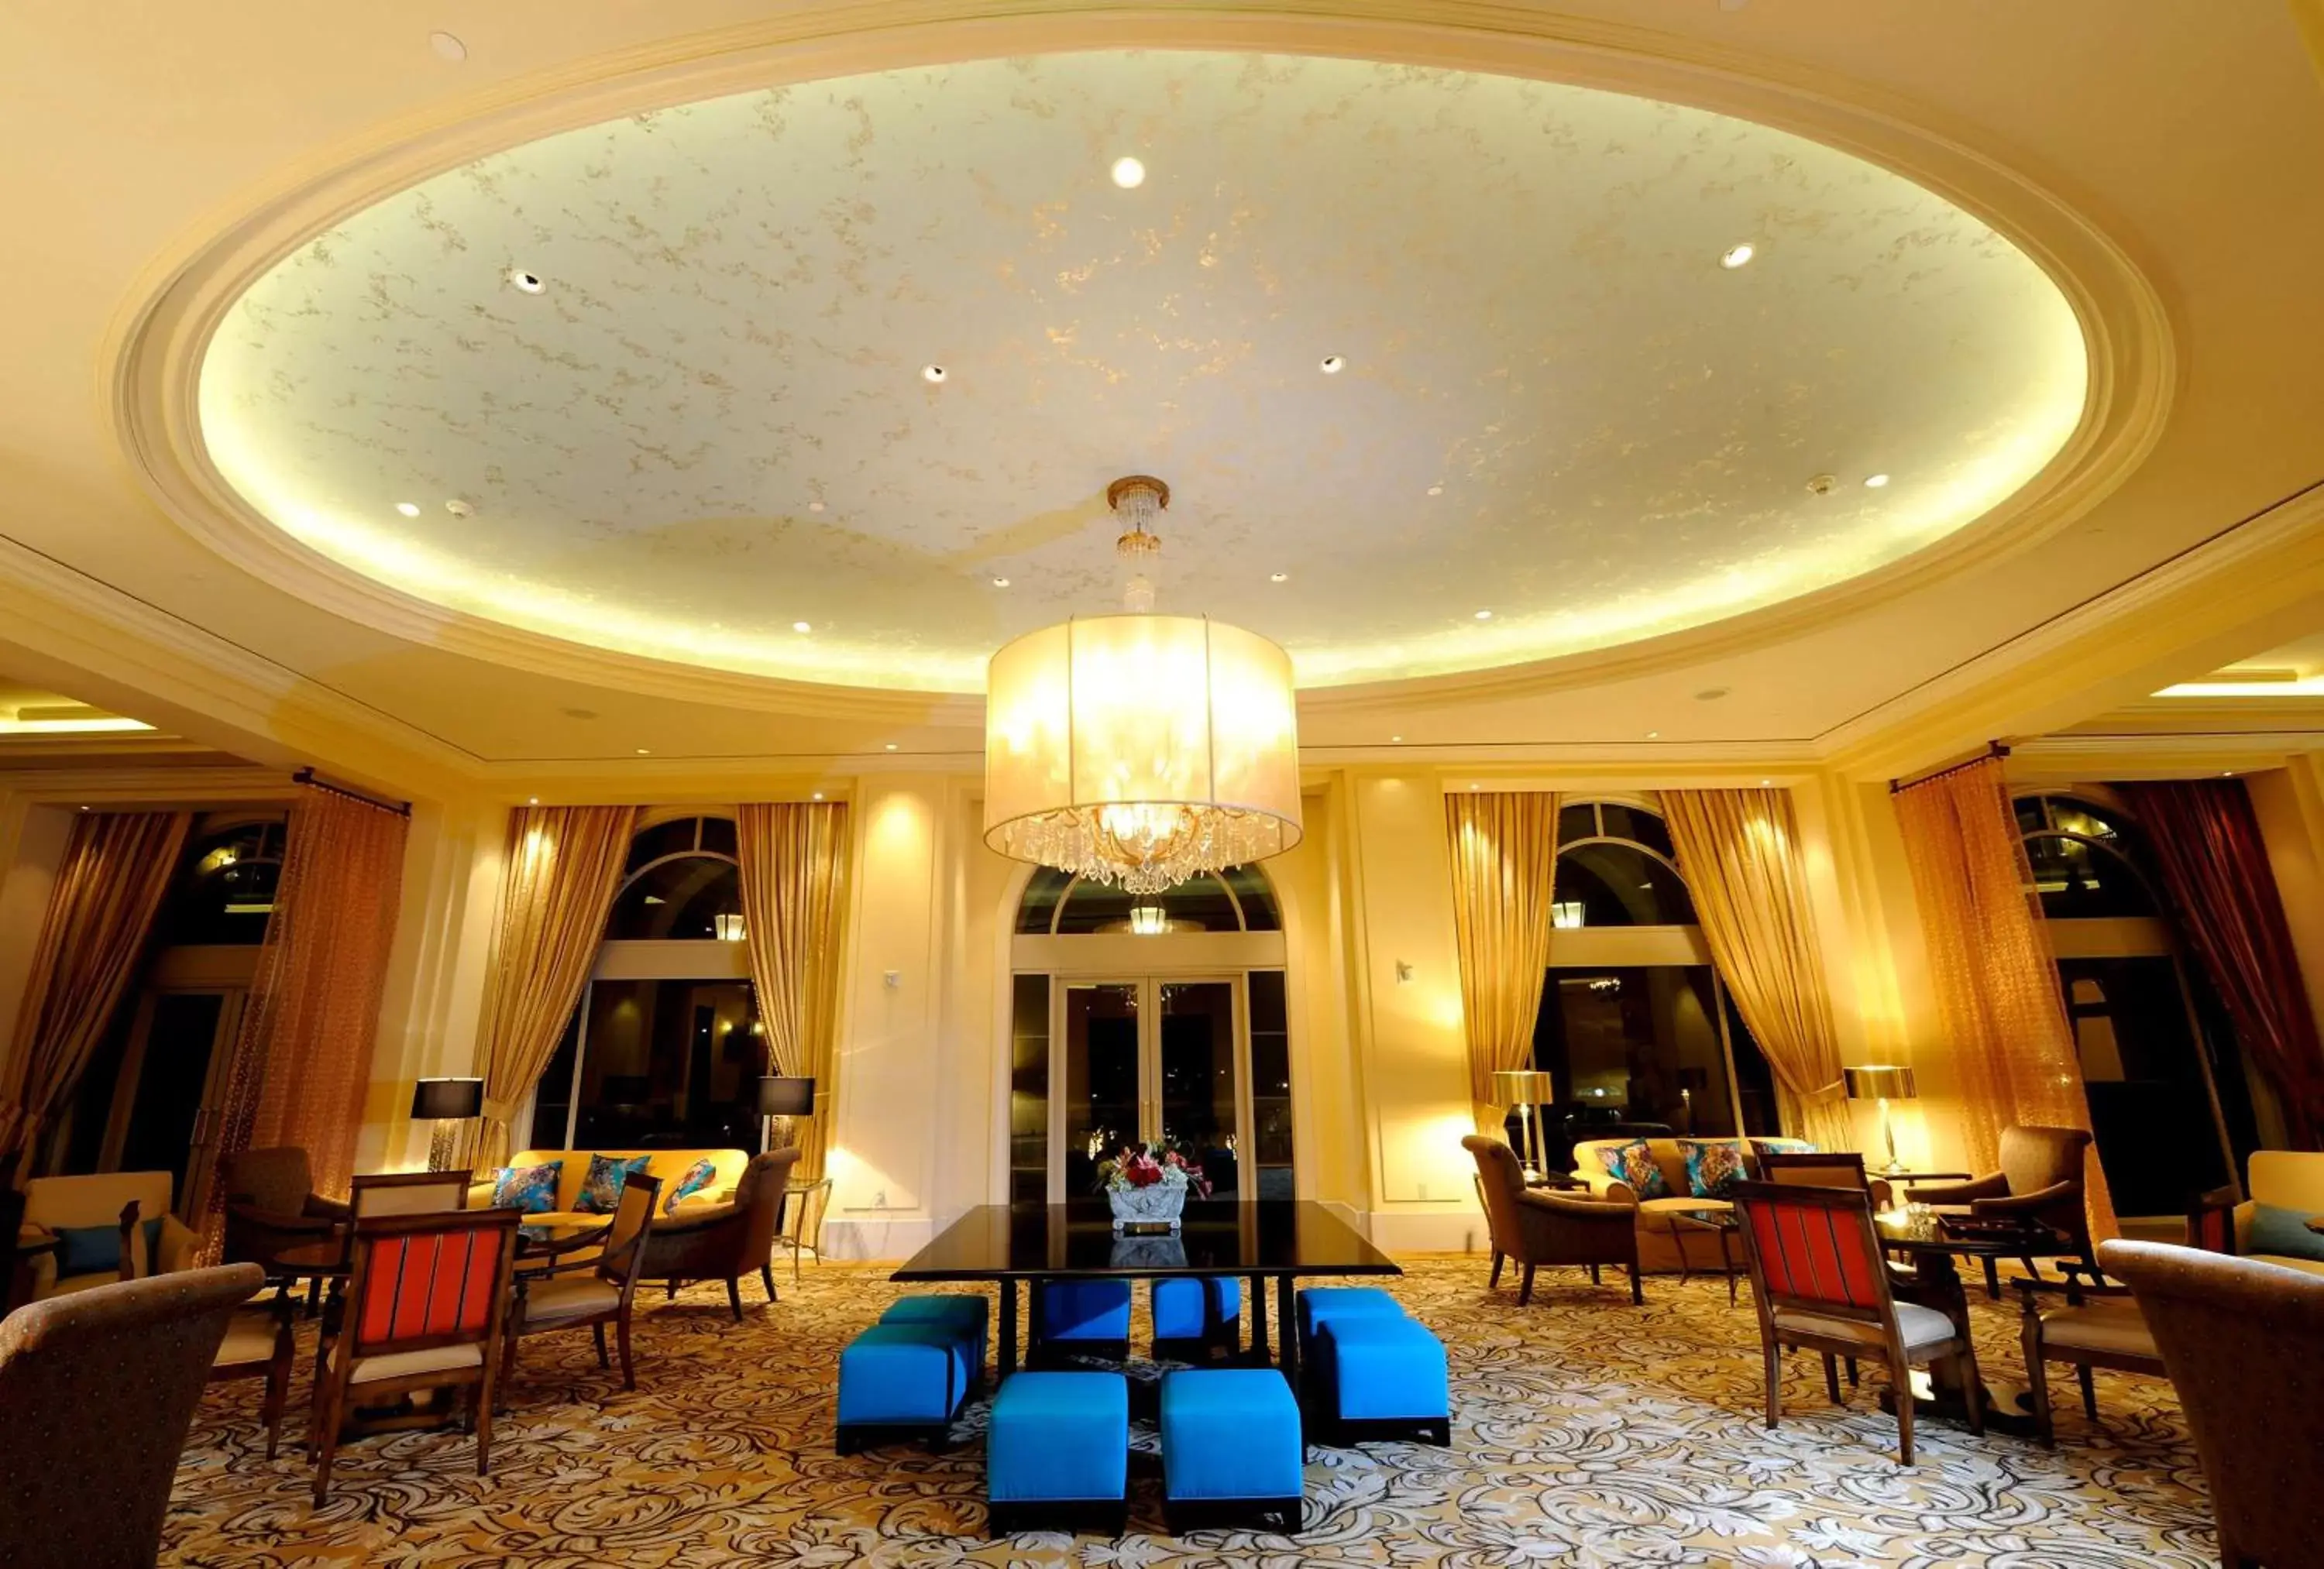 Lounge or bar, Restaurant/Places to Eat in Hilton Lake Las Vegas Resort & Spa